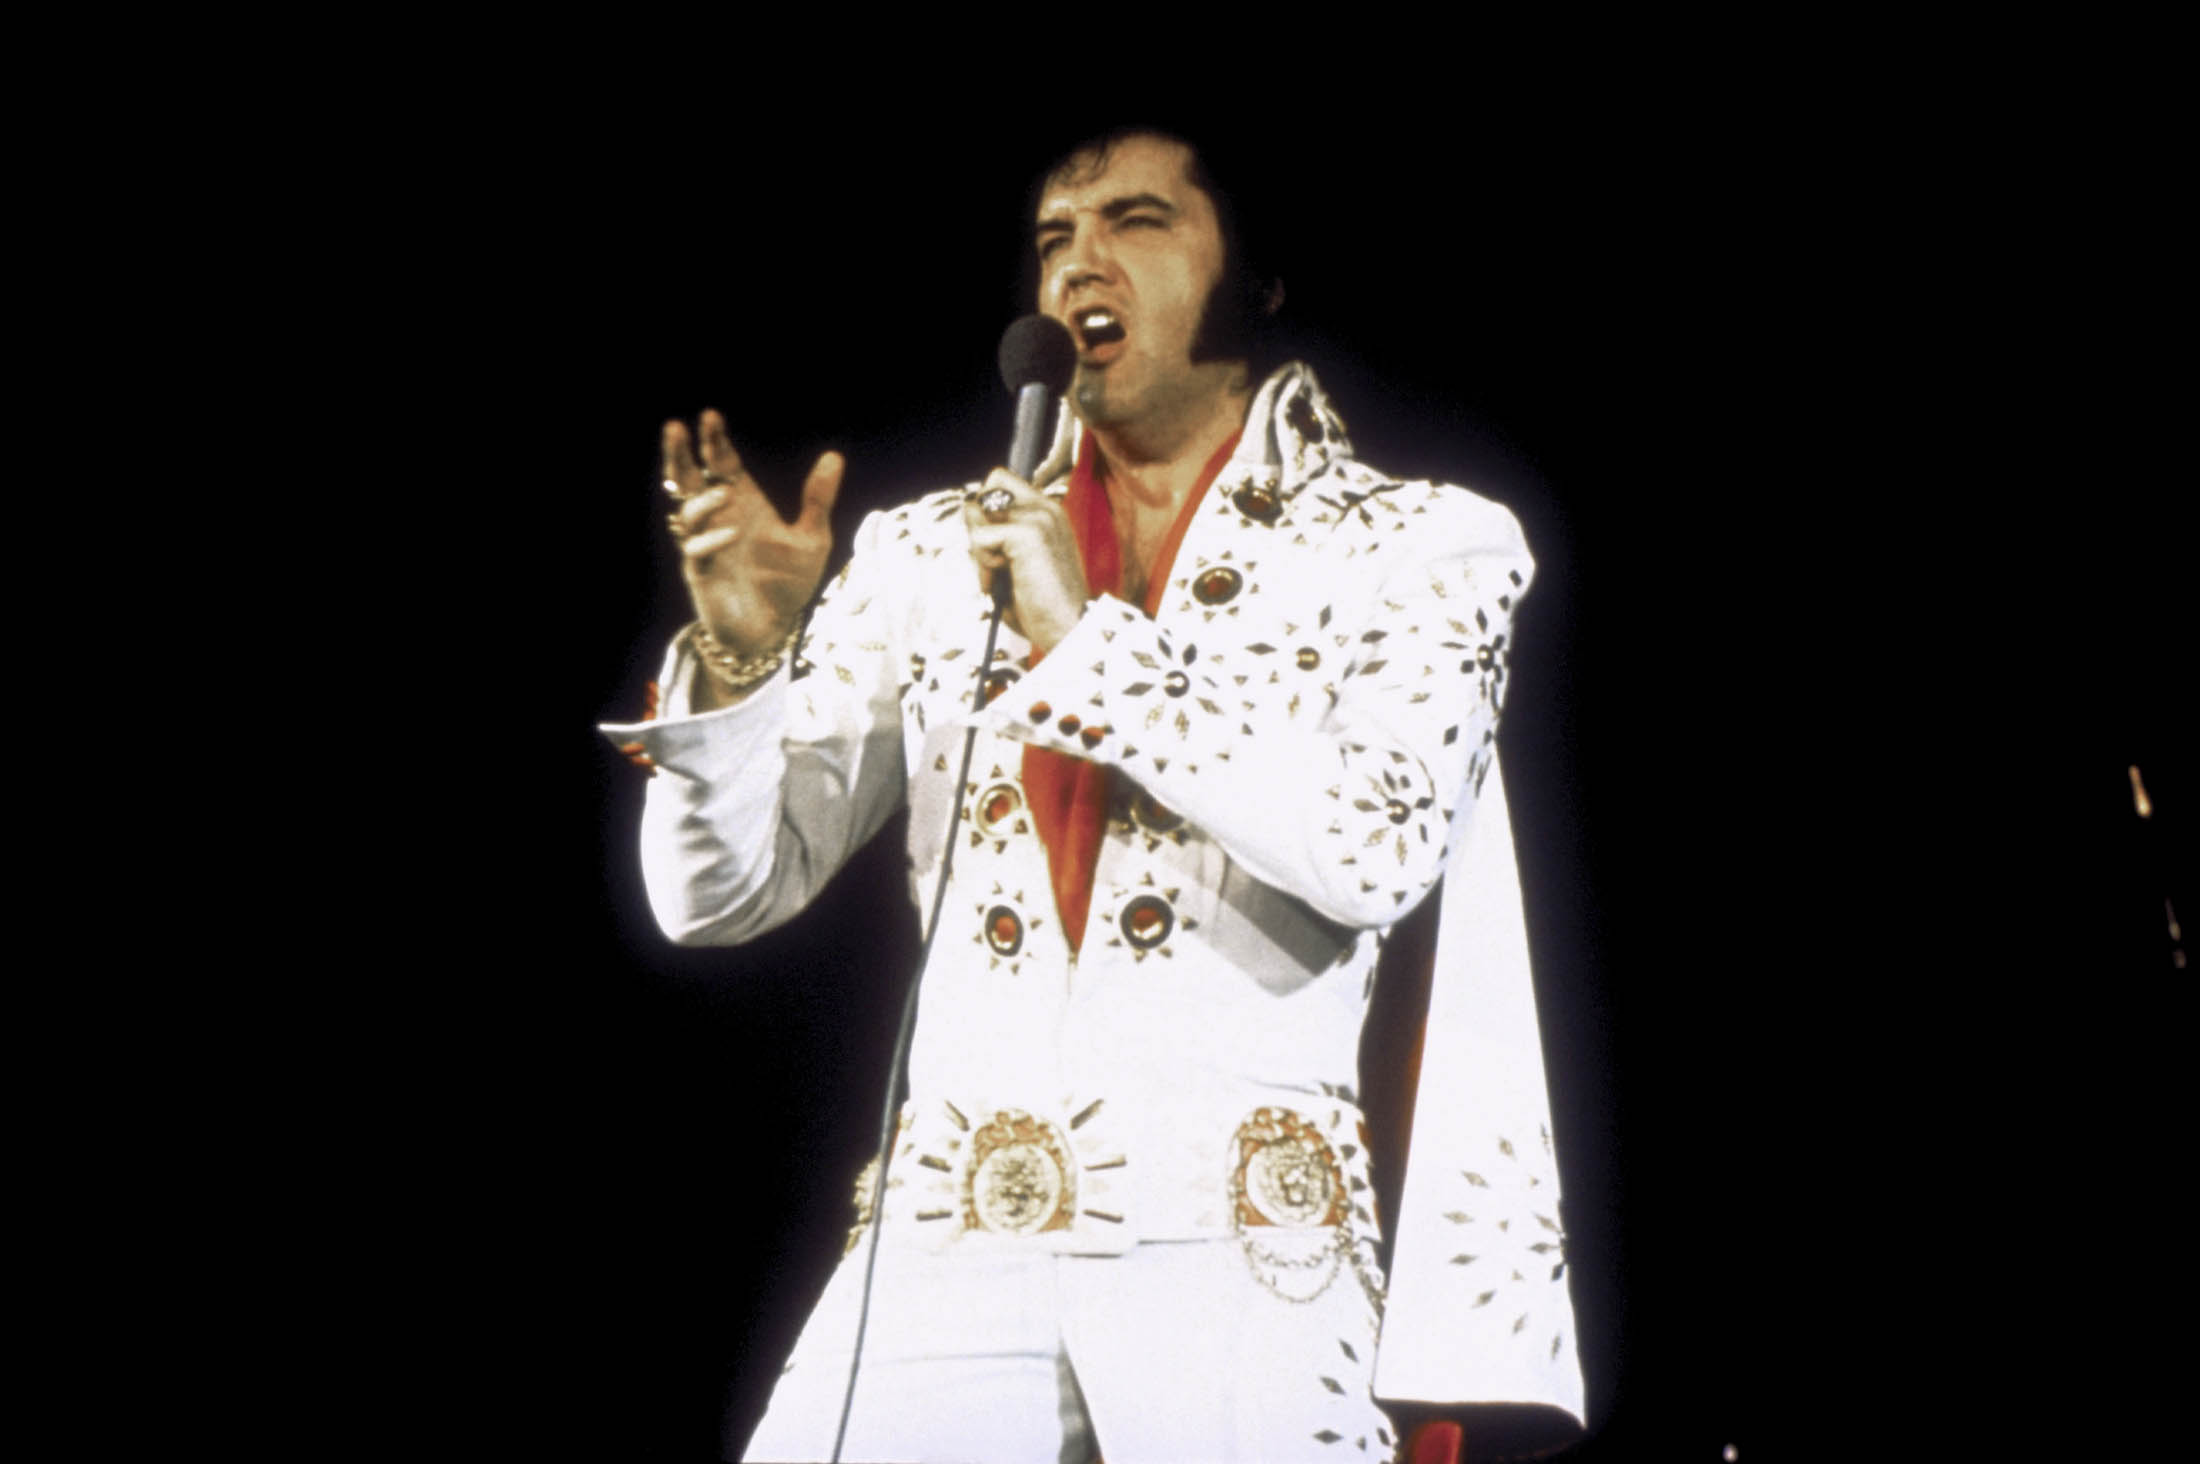 Graceland shares Elvis' archived 